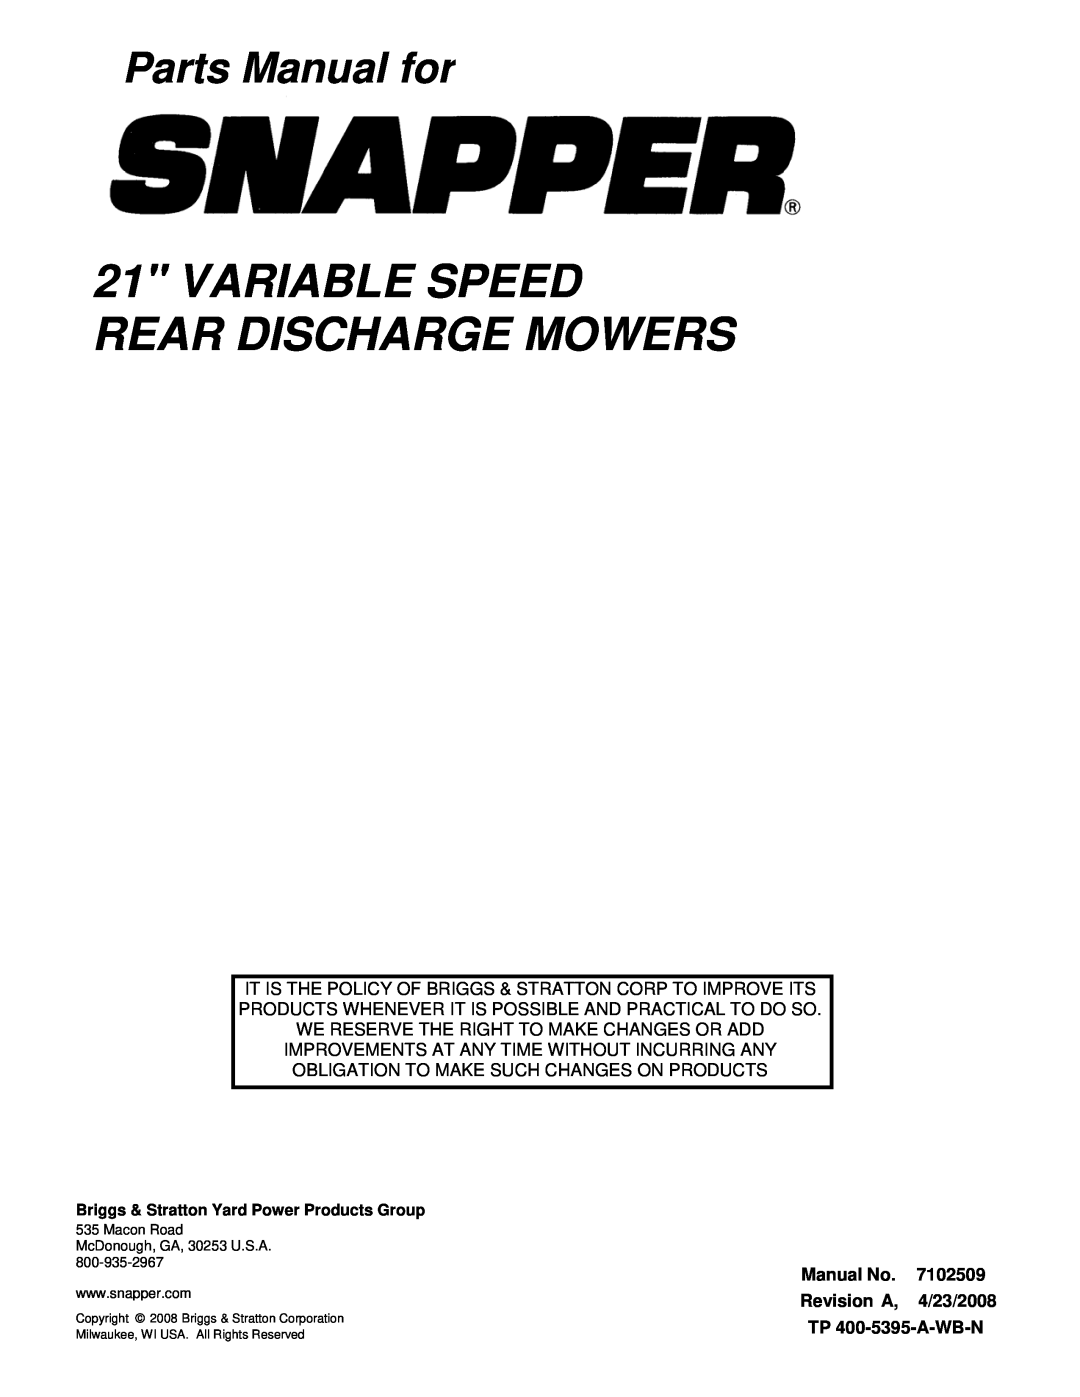 Snapper NSPV21675, NSPV21675E, SPV21675, SPV21675E, SPV21675EFC, SPV21675FC manual Revision A, 4/23/2008, Parts Manual for 